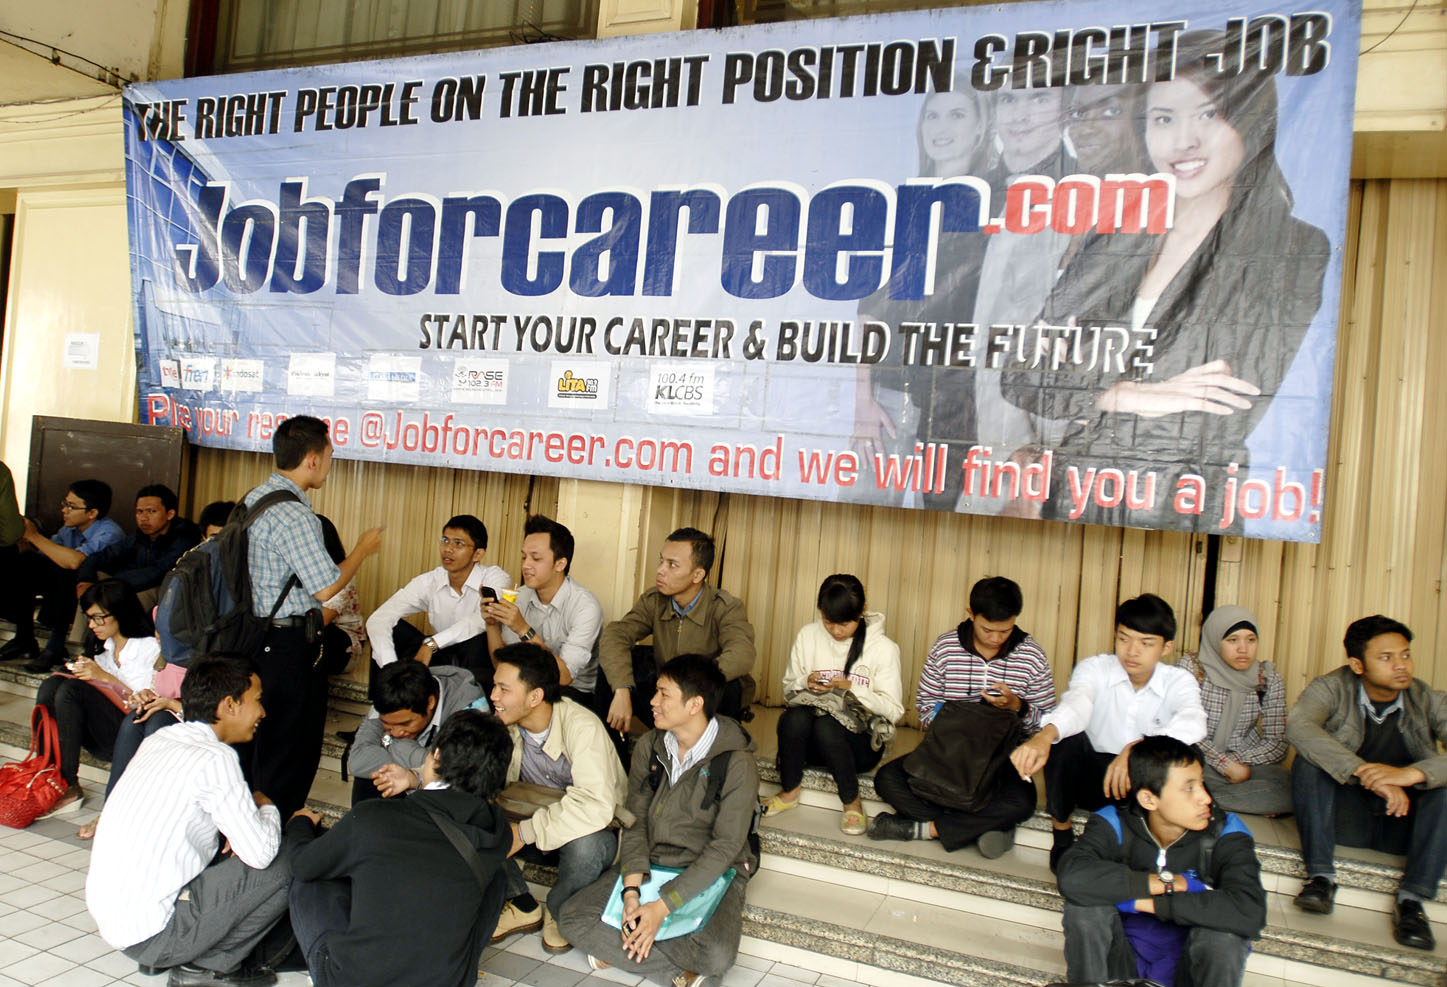  FOTO: Job for career 2011